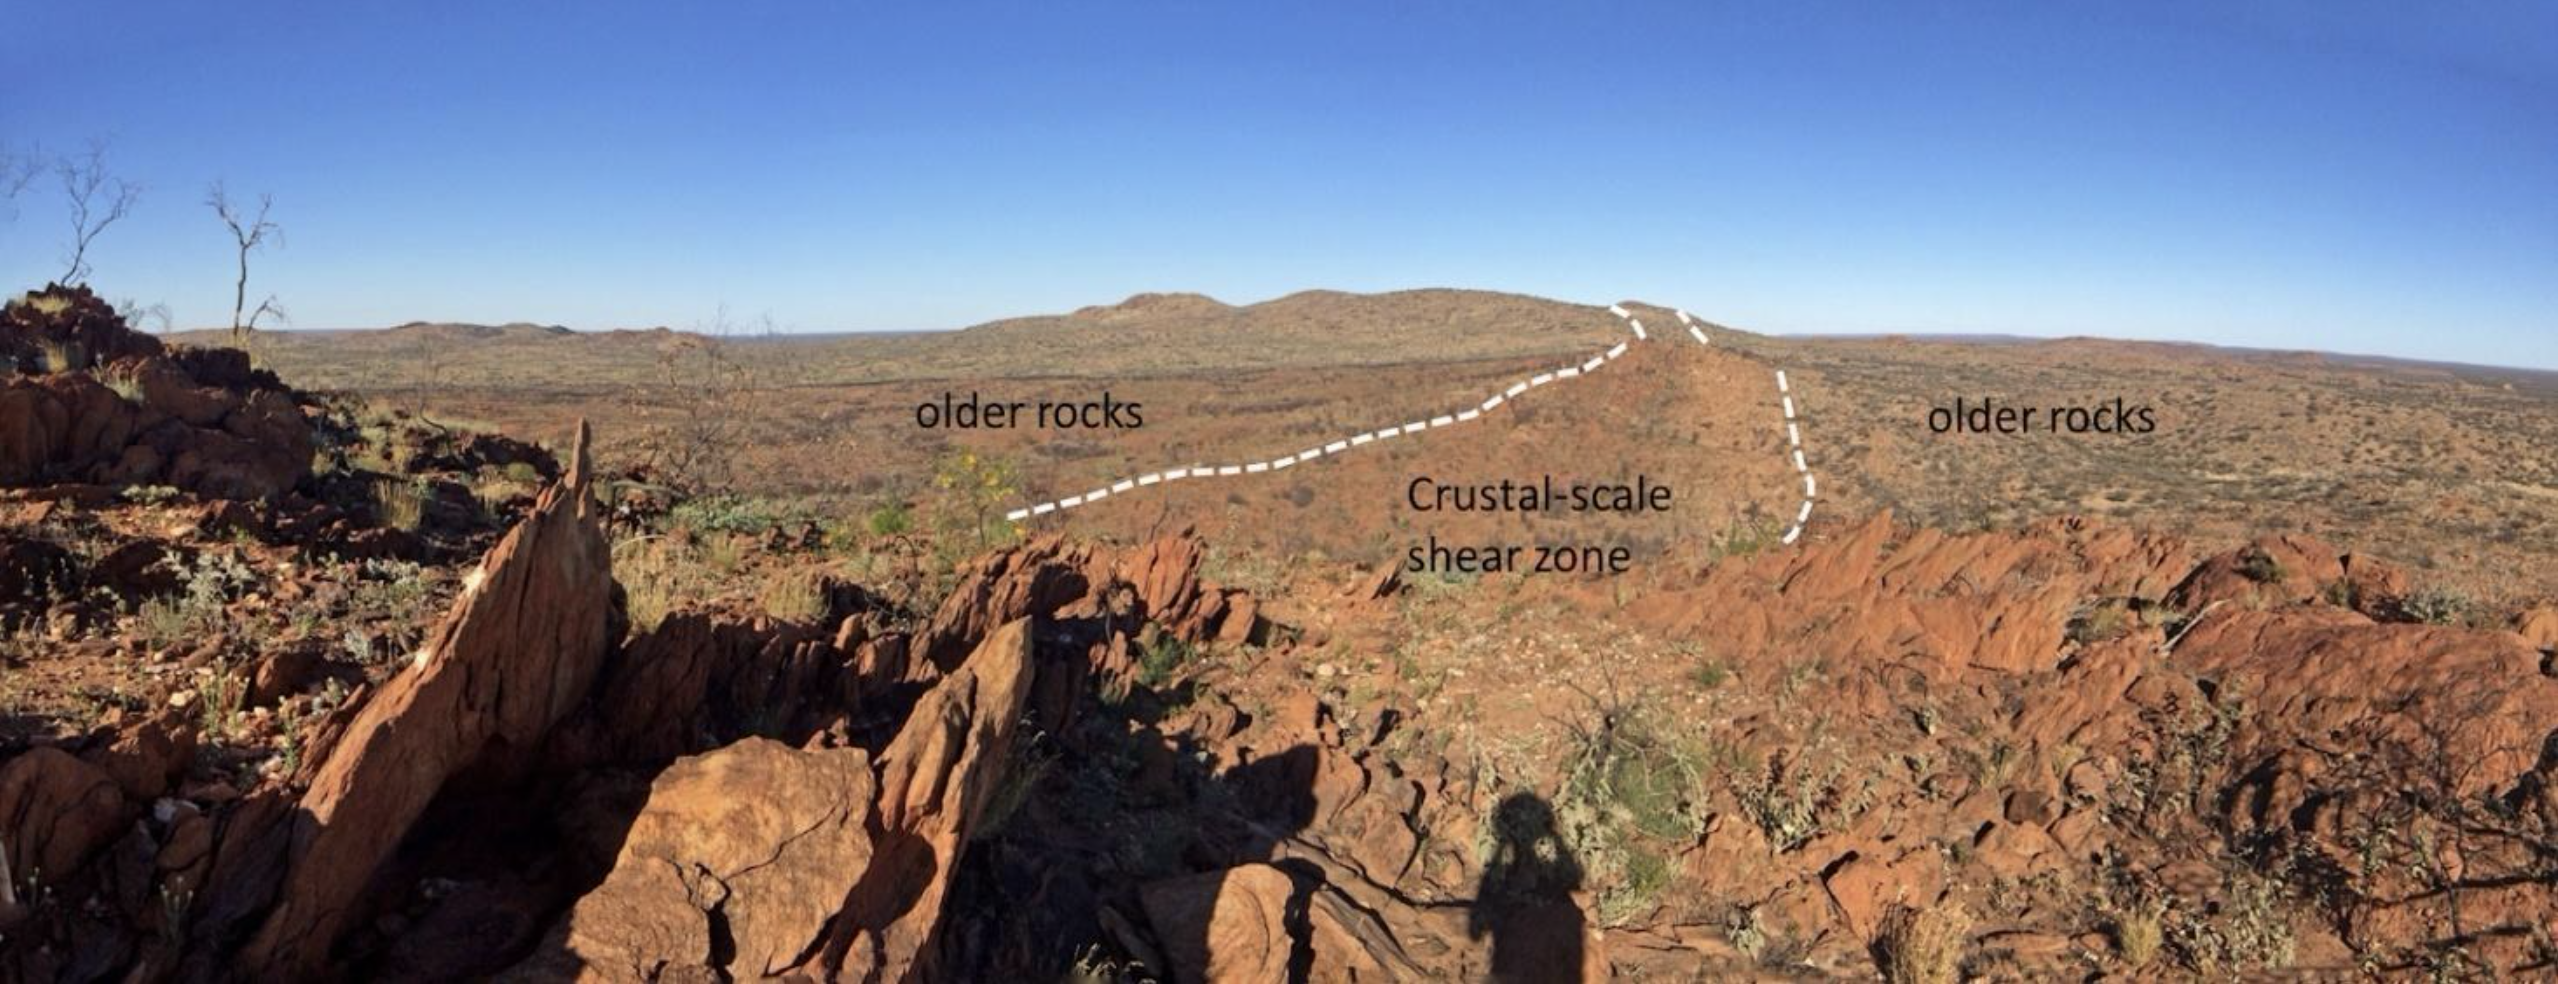 A shear zone in central Australia.